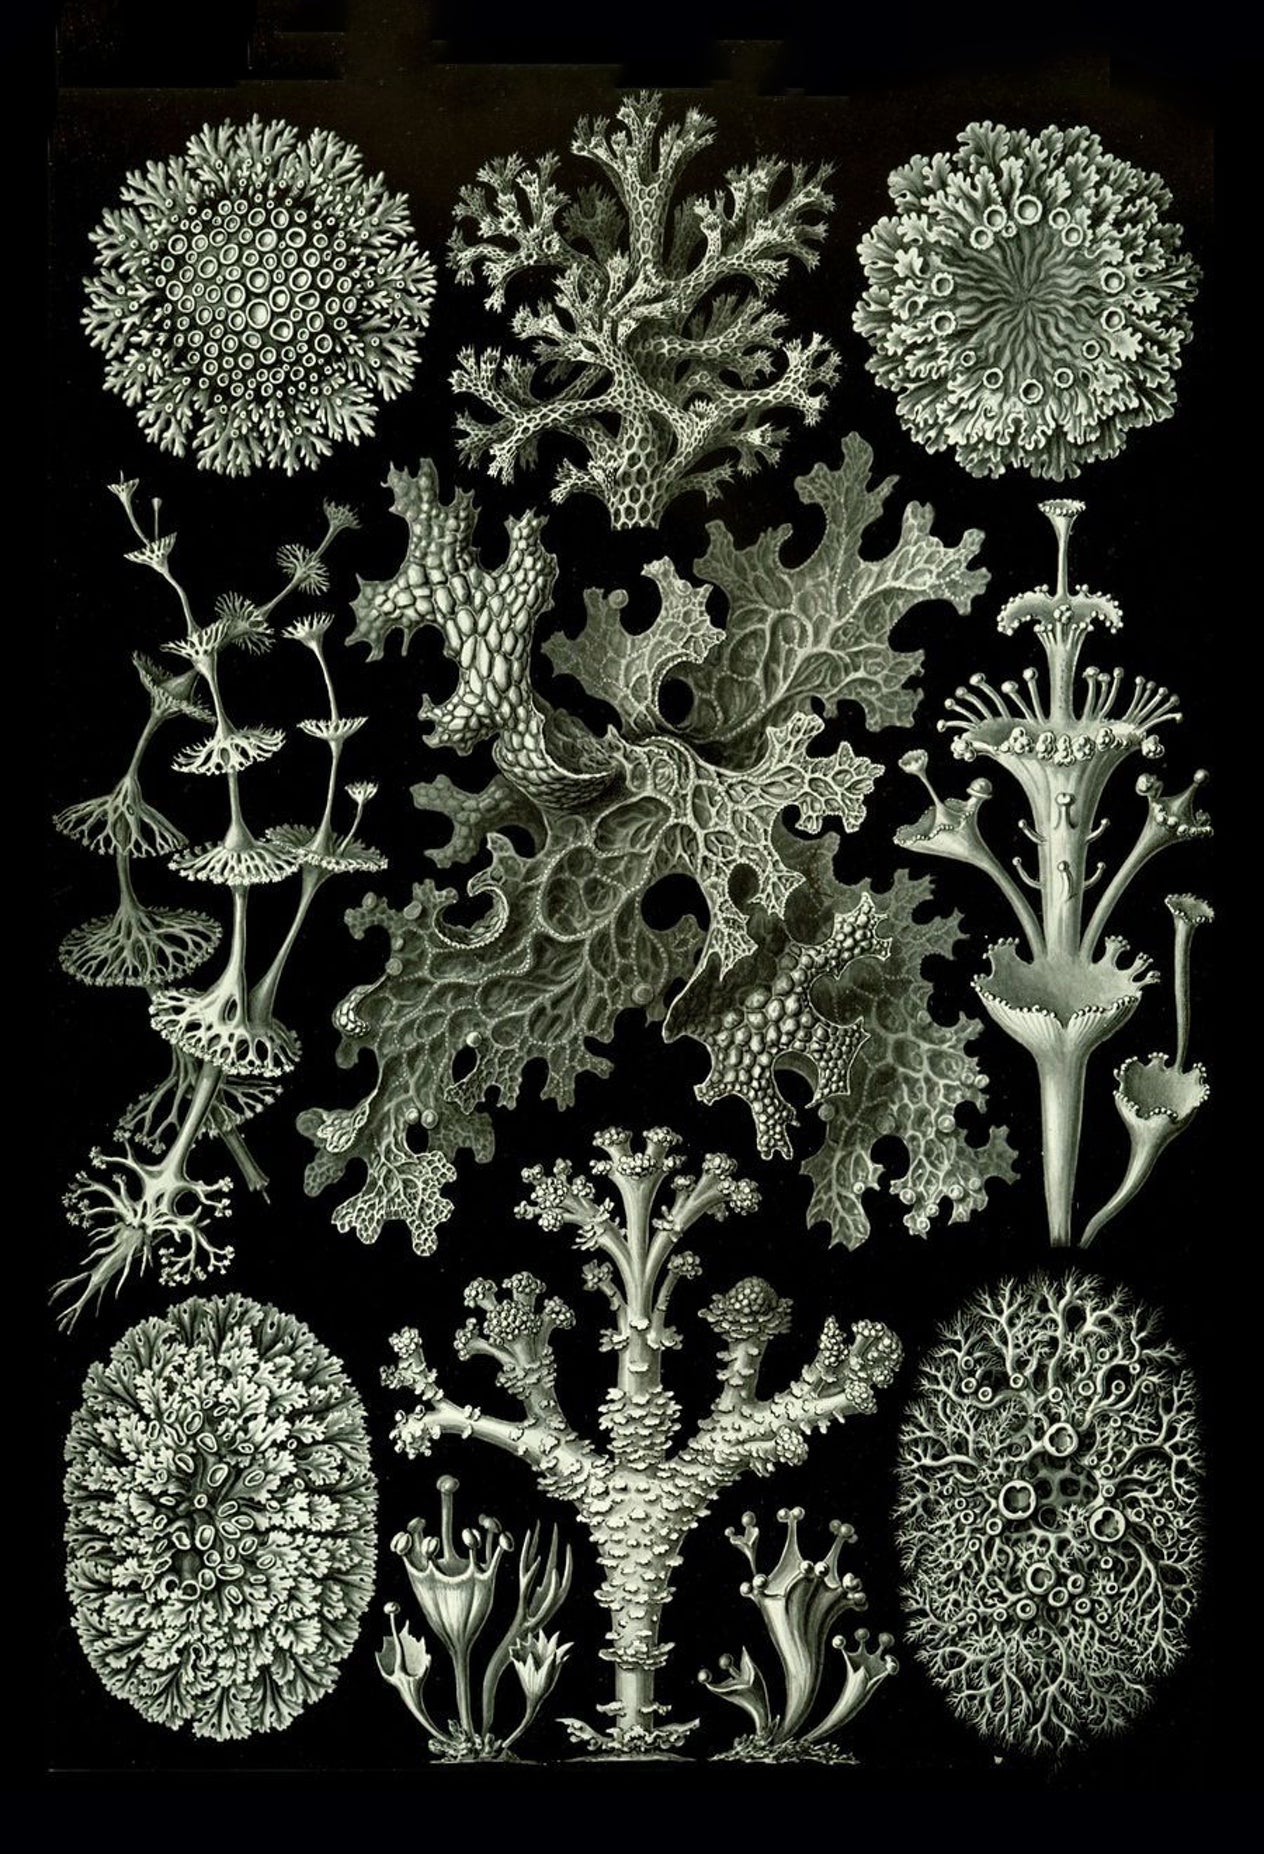 Lichen from Ernst Haeckel's Kunstformen der Natur, 1904 - Postcard